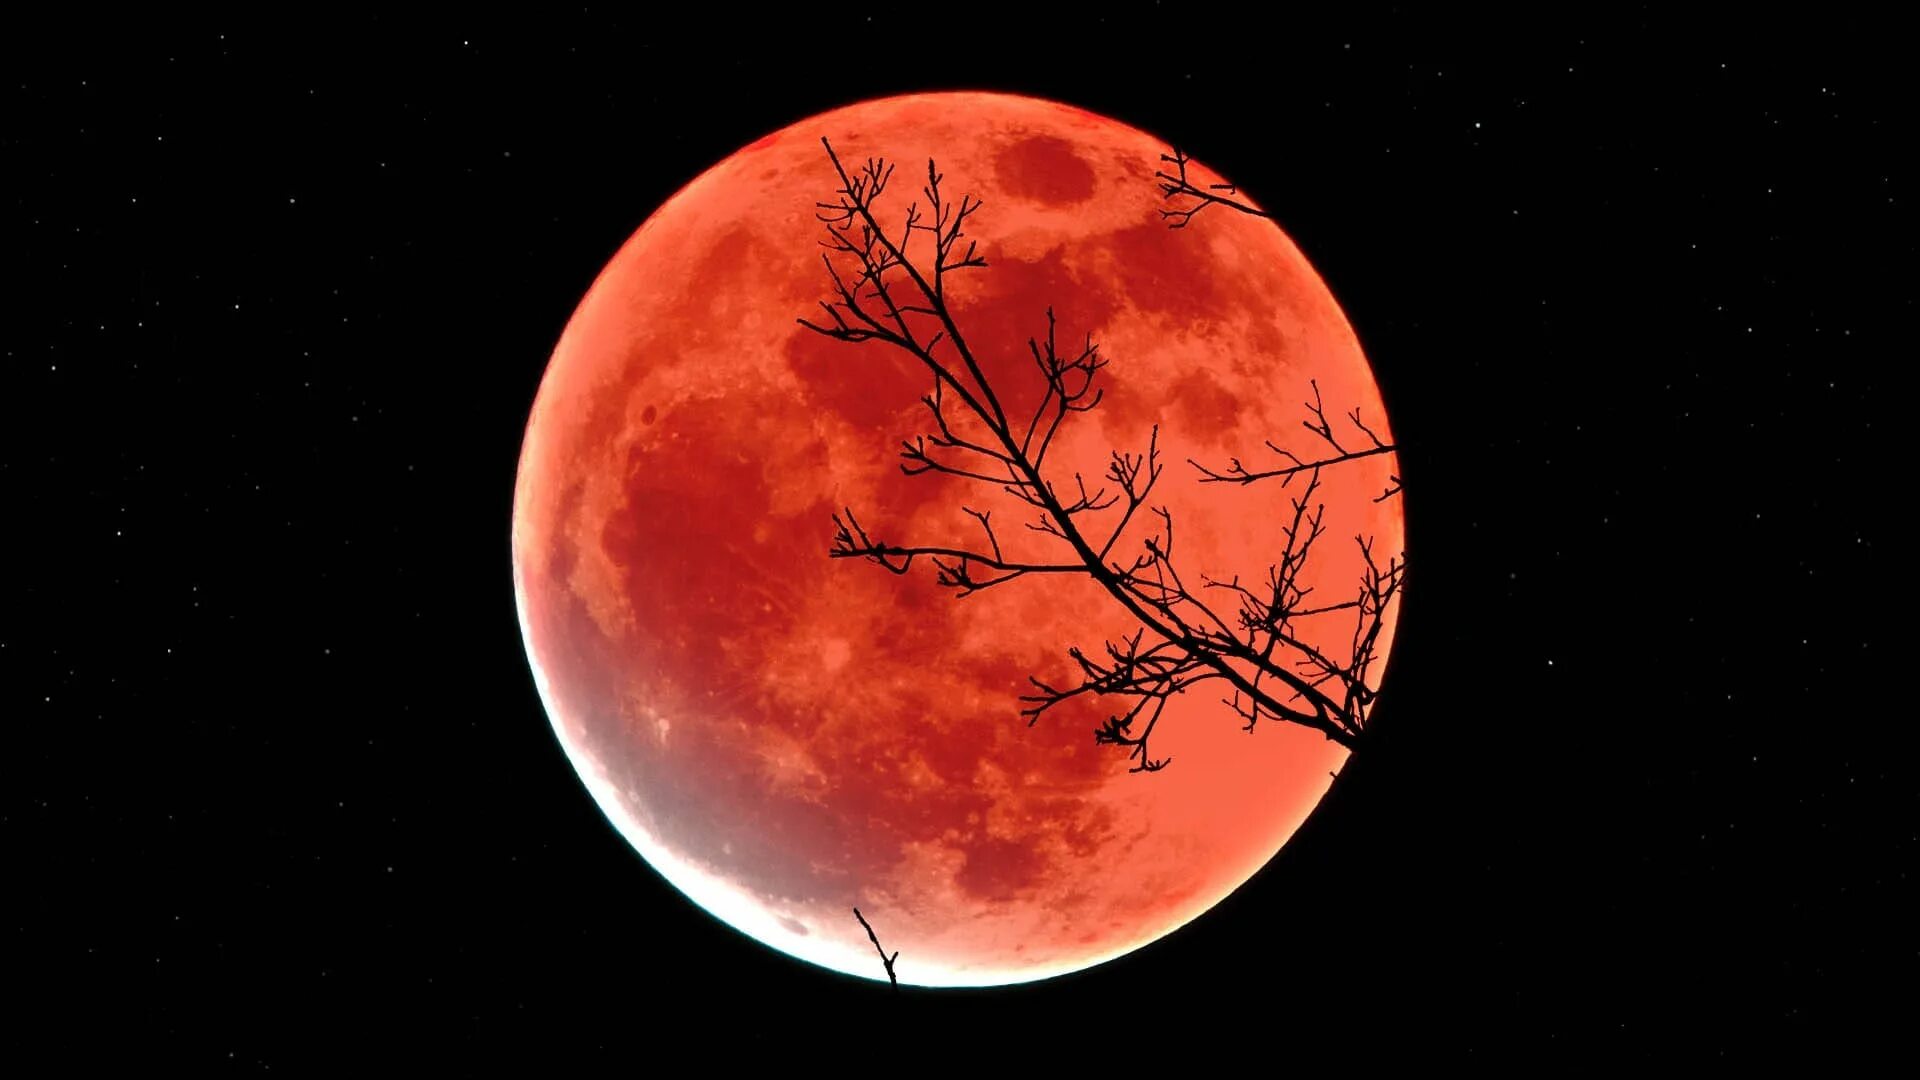 2023 11 08. Лунное затмение 16 мая 2022. Moon Eclipse 2021. Кровавая Луна 8 ноября 2022. Затмение Луны Кровавая Луна.